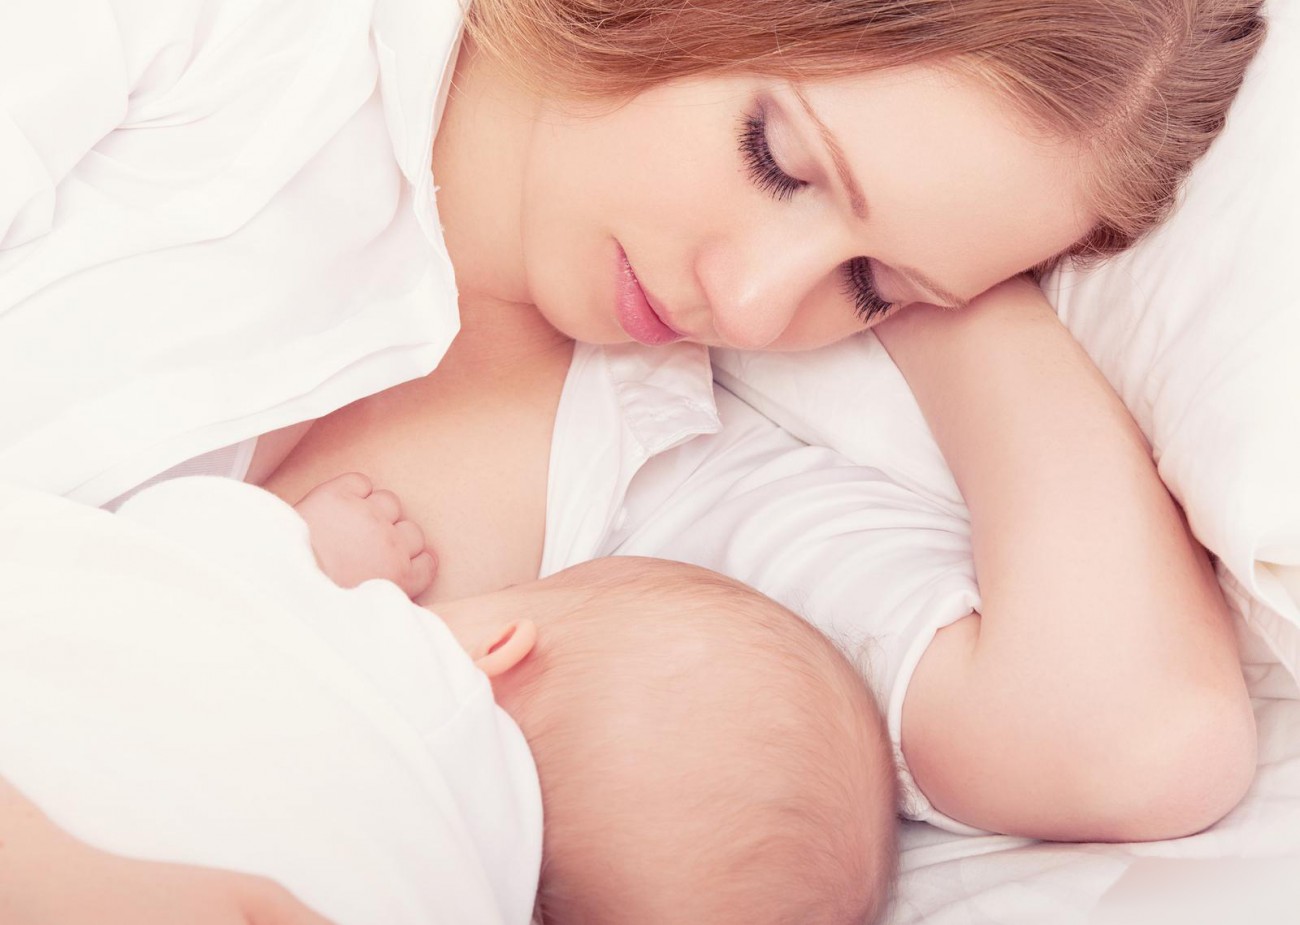 Chế độ ăn giảm cân hiệu quả dành cho mẹ bỉm sữa sau sinh